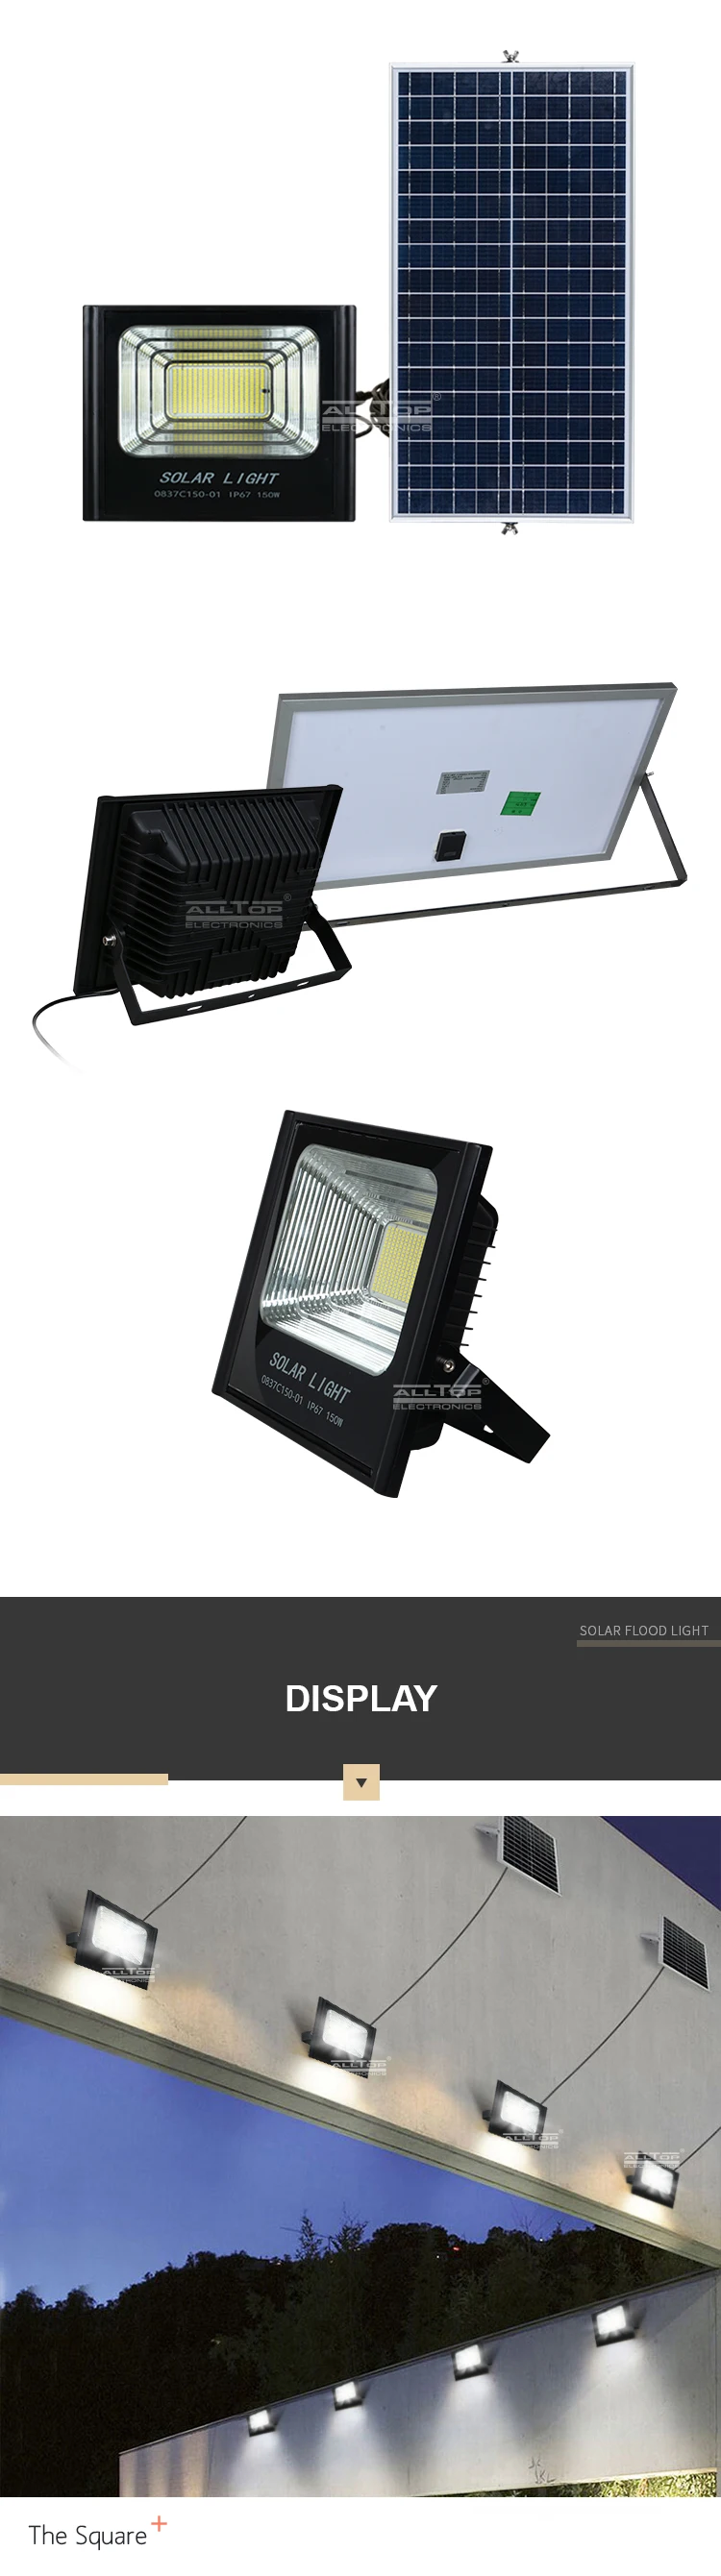 ALLTOP Intelligent 50w 100w 150w 200w Outdoor IP65 Waterproof Sensor LED Solar Flood Light